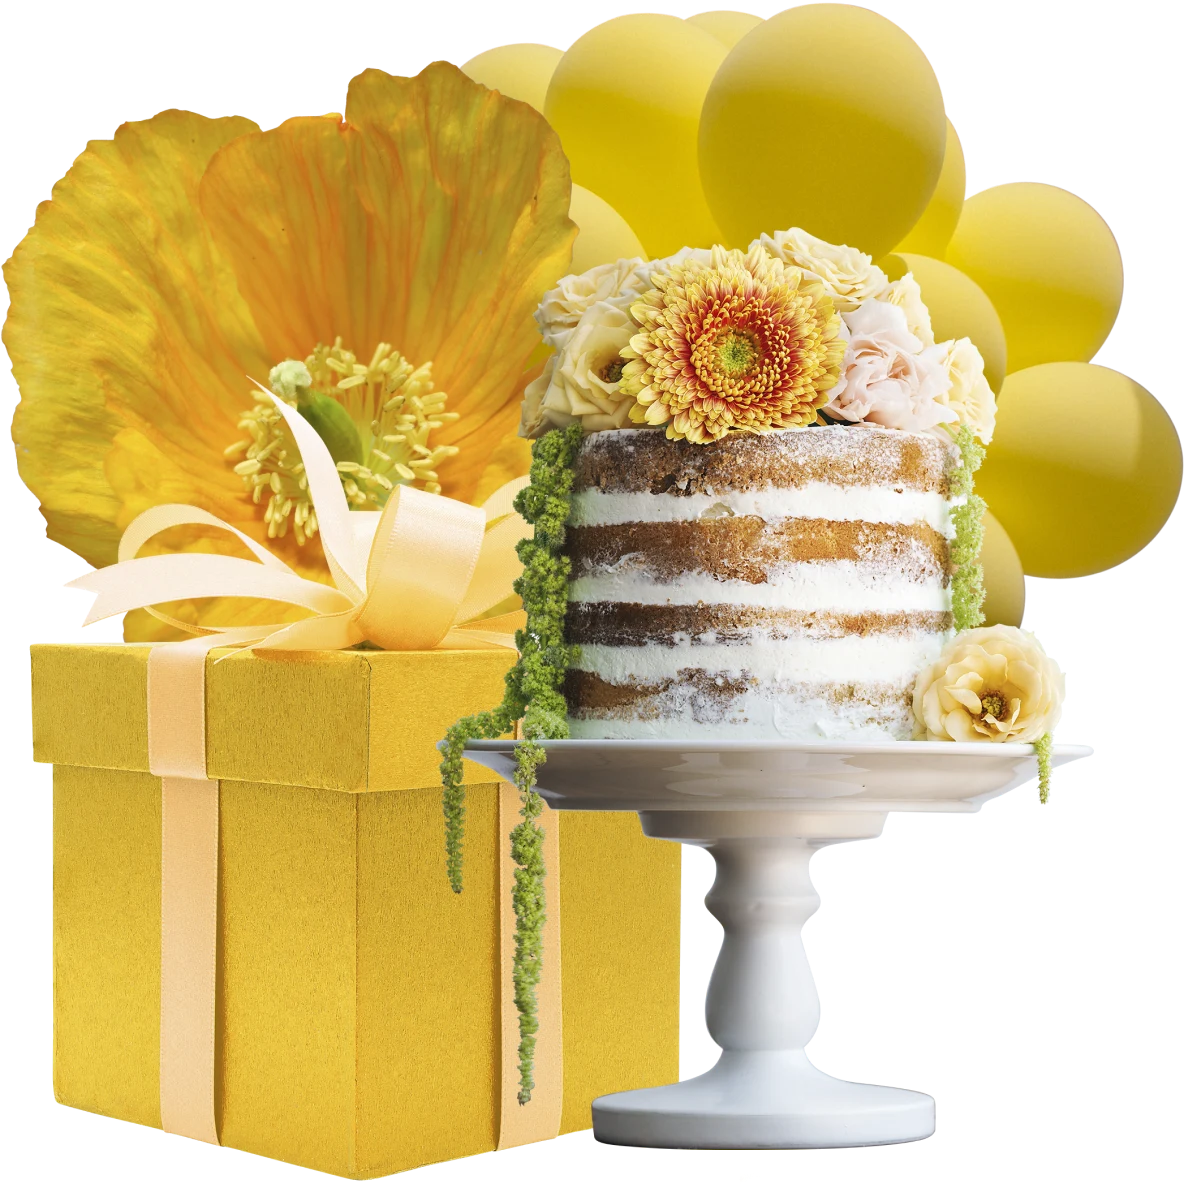 Eine Collage mit Gegenständen zum Thema Feiern. Rechts eine weiße Torte mit vier Lagen, die auf einer Tortenplatte steht. Links ein großer gelber Geschenkkarton mit farblich passender Schleife. Im Hintergrund sind eine große gelbe Blume und gelbe Luftballons zu sehen.